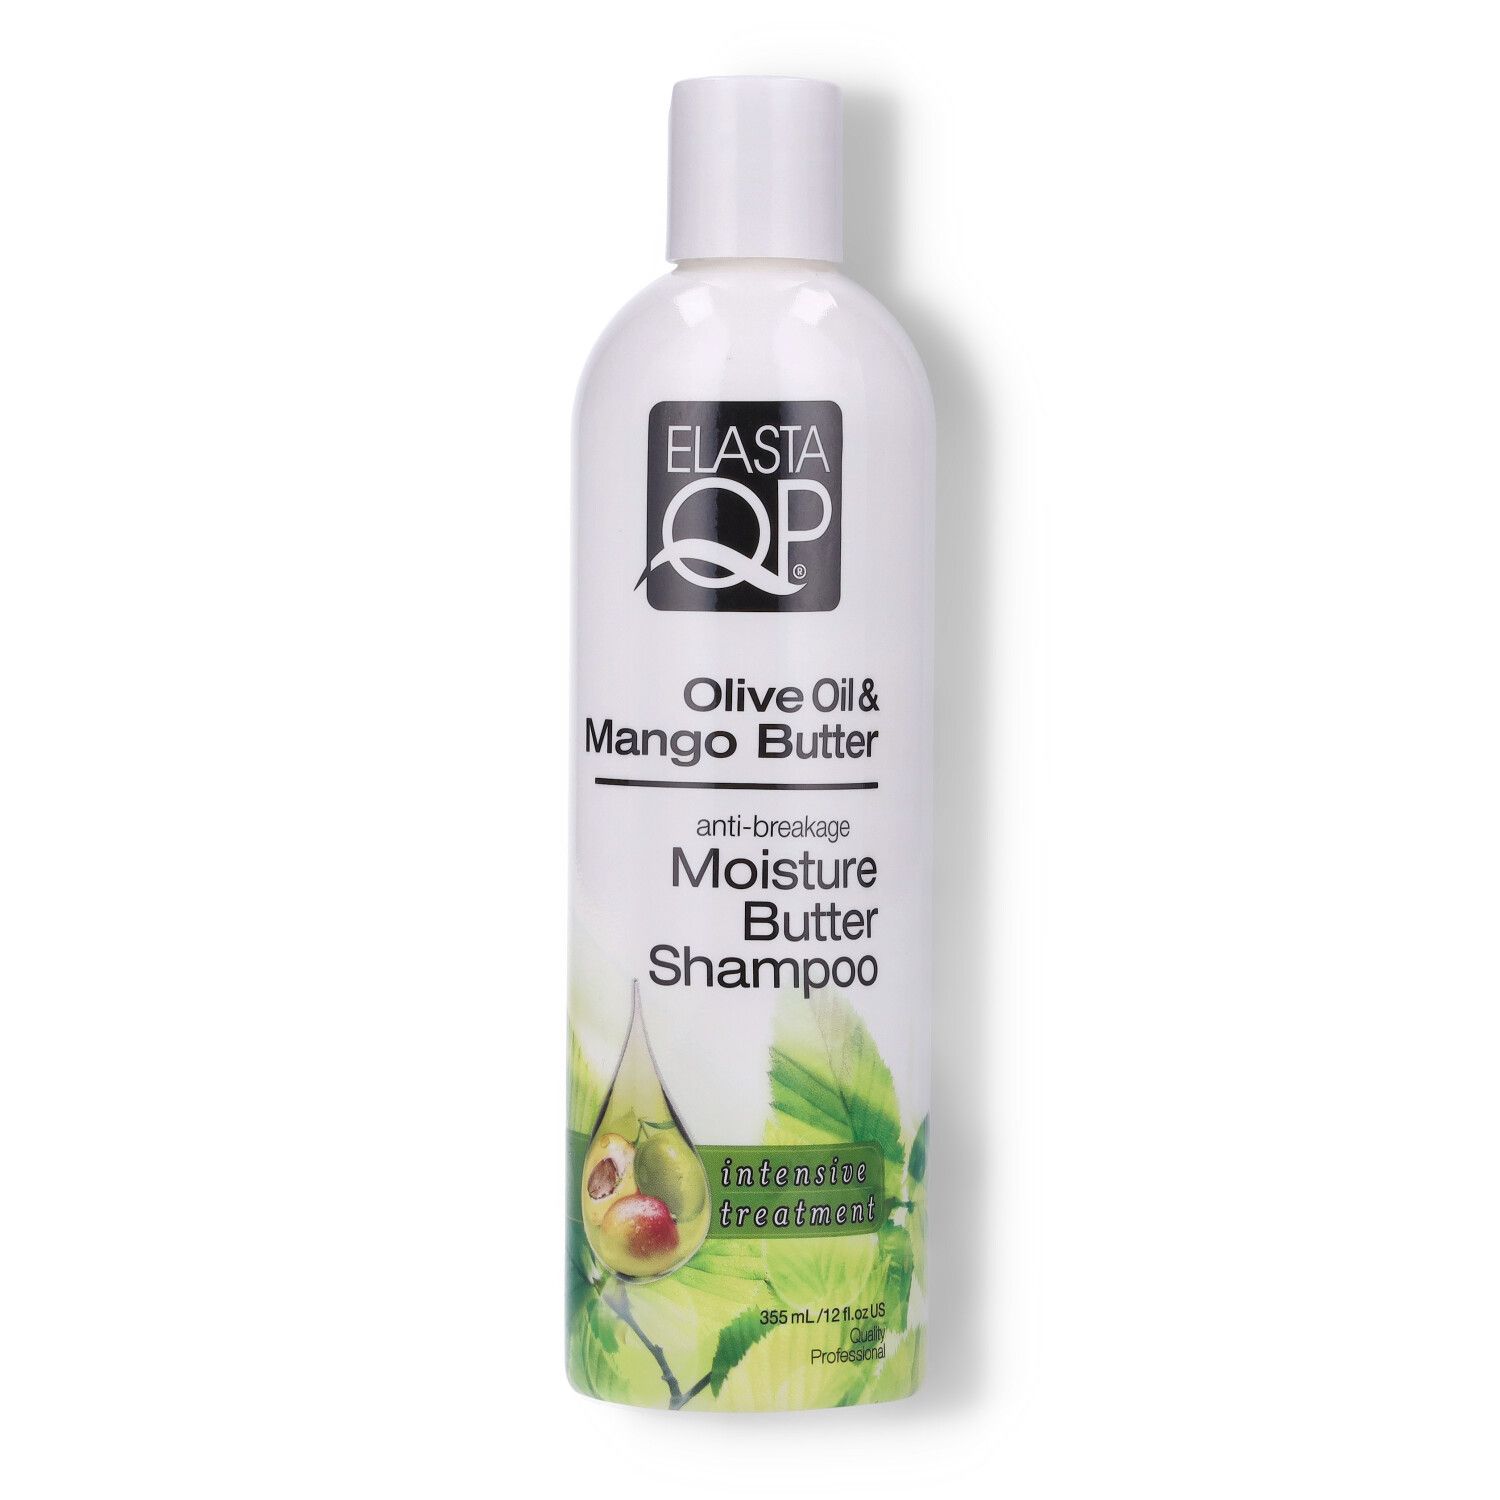 Elasta QP Olive Oil & Mango Butter Moisture Shampoo - 12oz